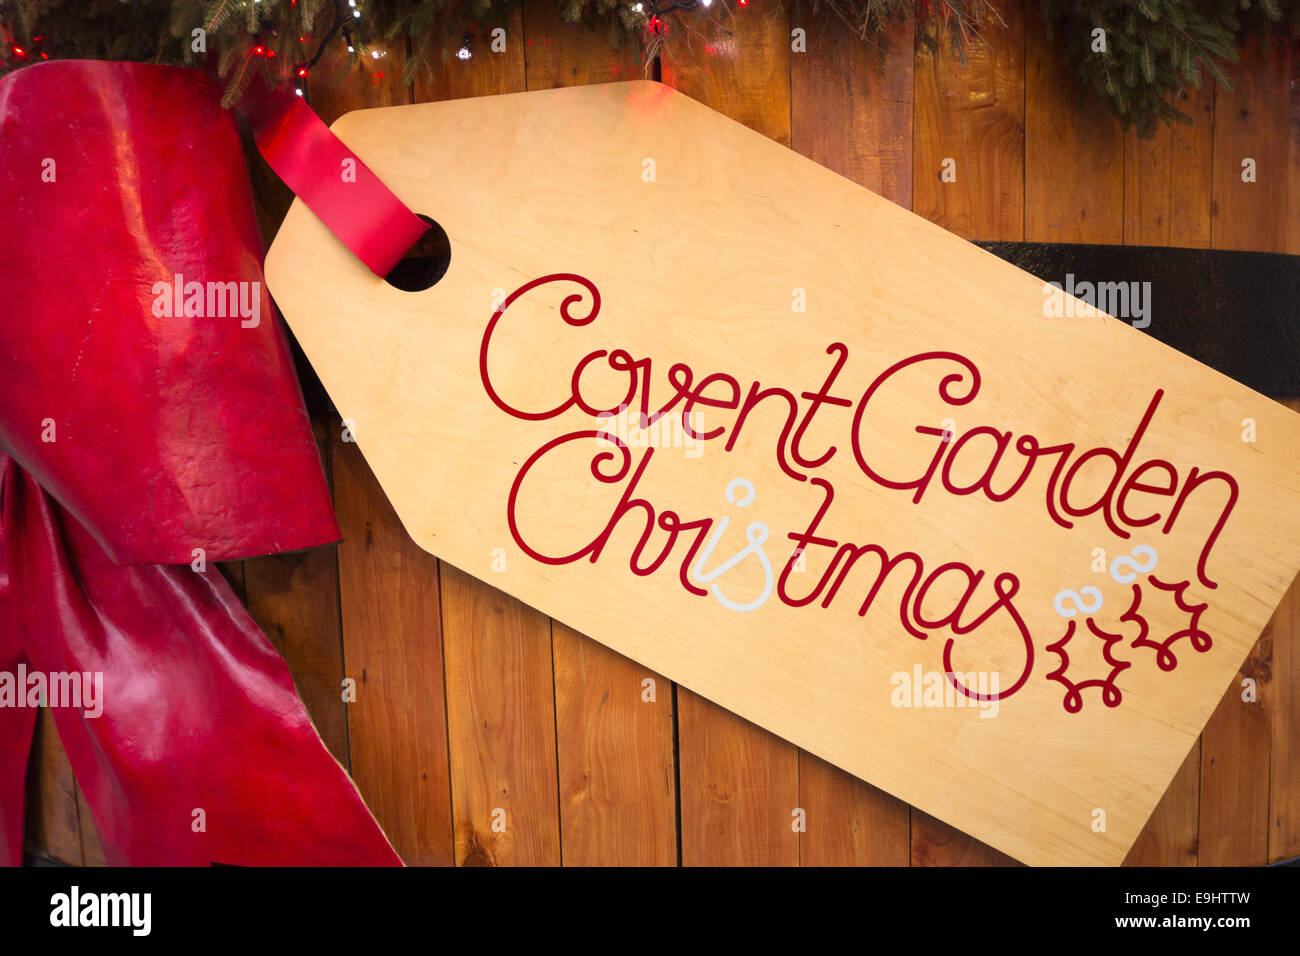 England, London, Covent Garden. Riesige hölzerne Label hängen von einer roten Schleife Werbung Weihnachten in Covent Garden Stockfoto